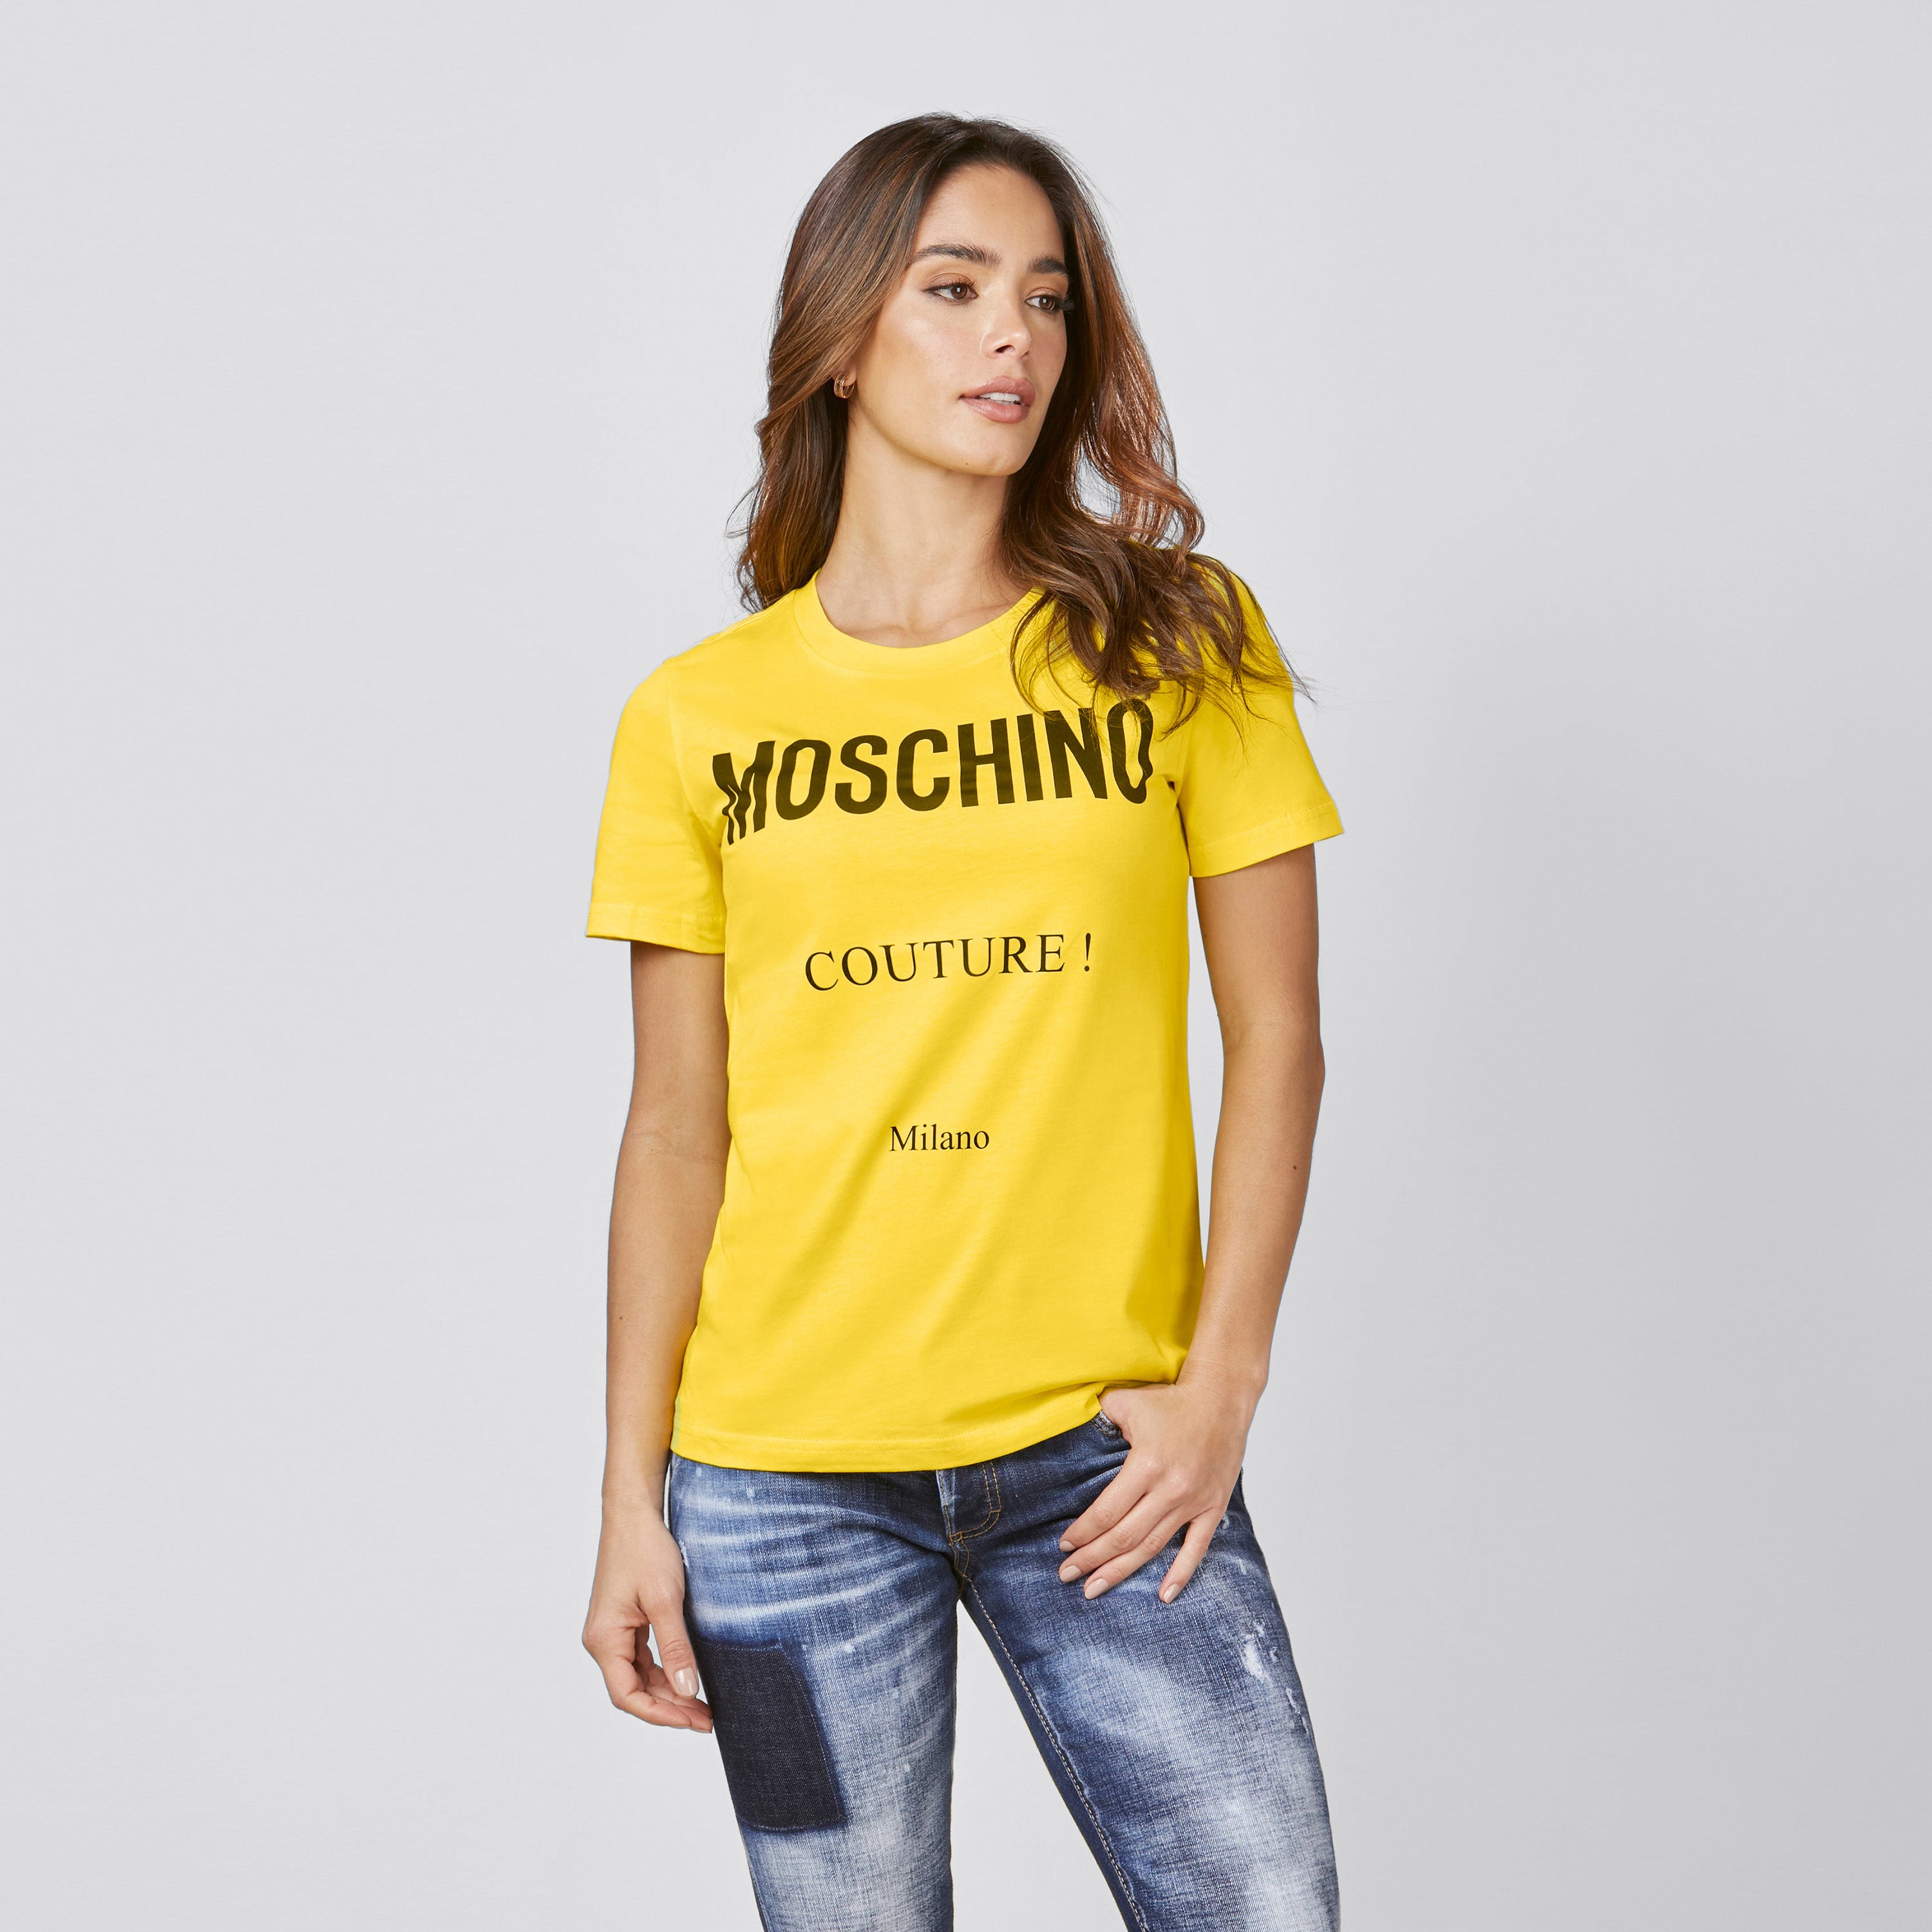 Camiseta Amarilla Moschino Couture !